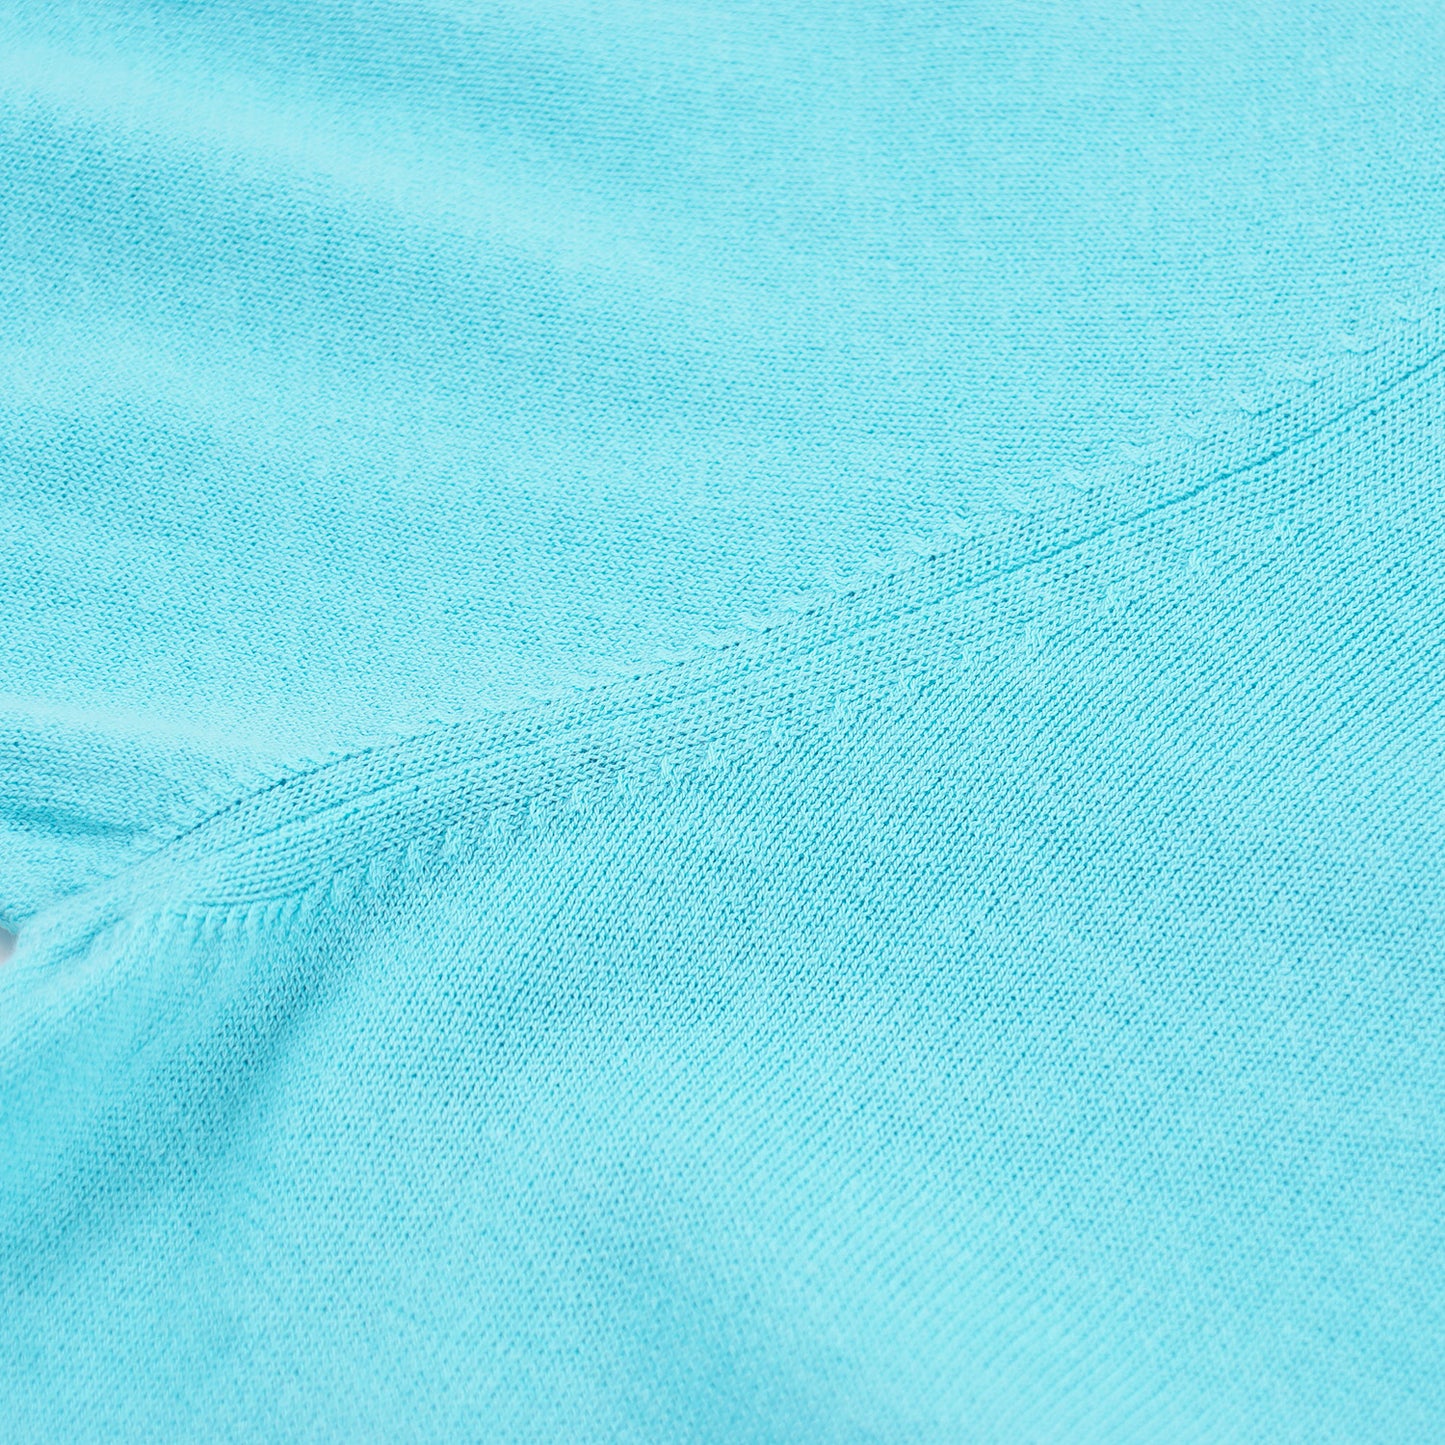 Luigi Borrelli Knit Cotton Polo Shirt - Top Shelf Apparel